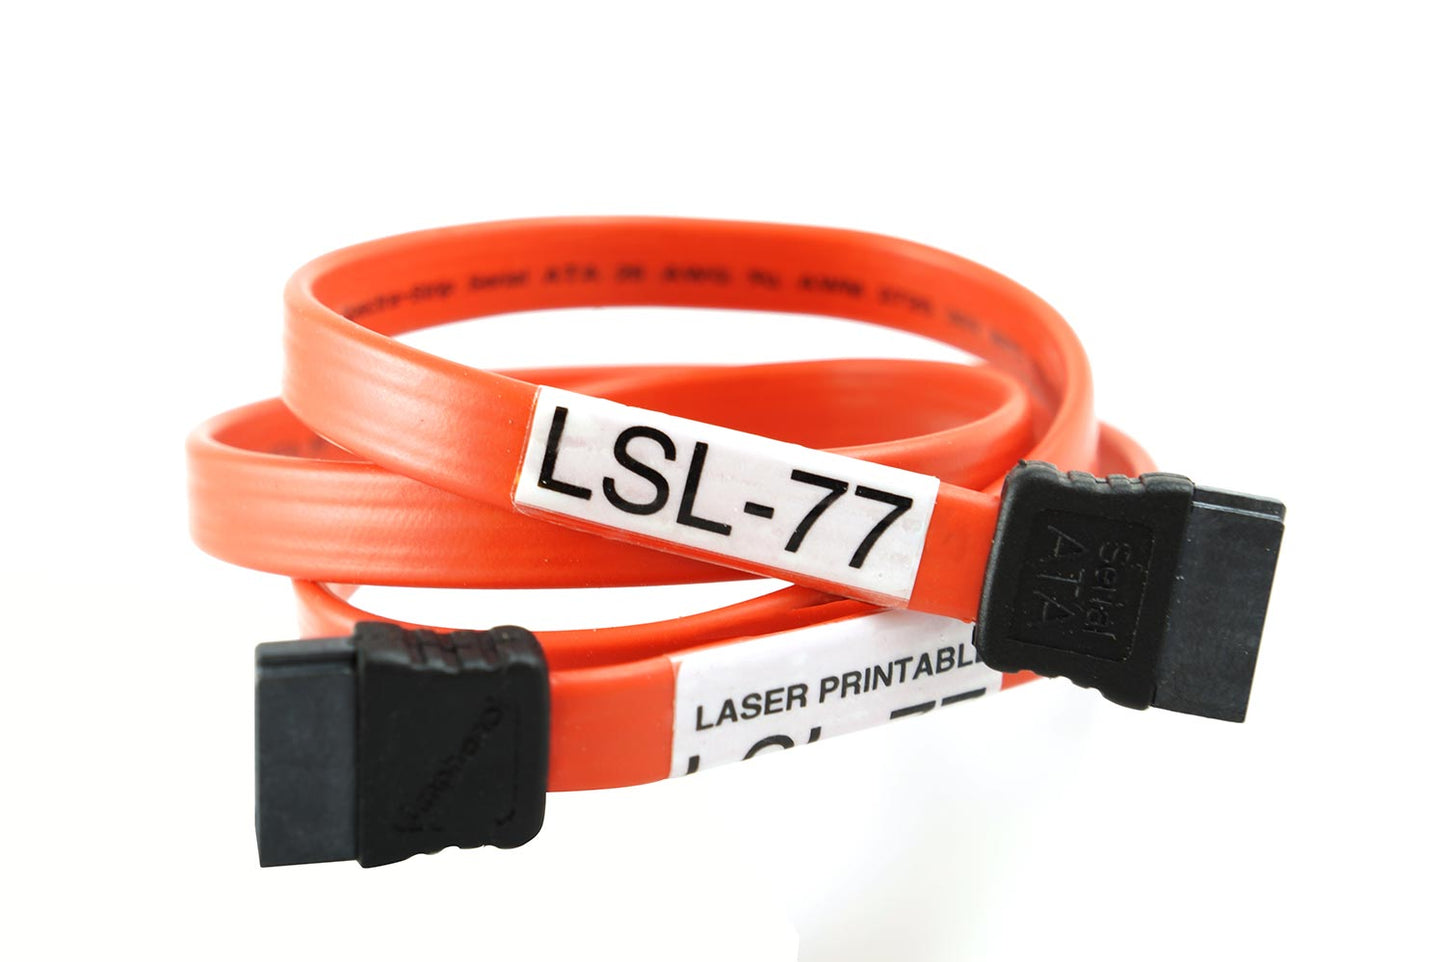 LSL-77